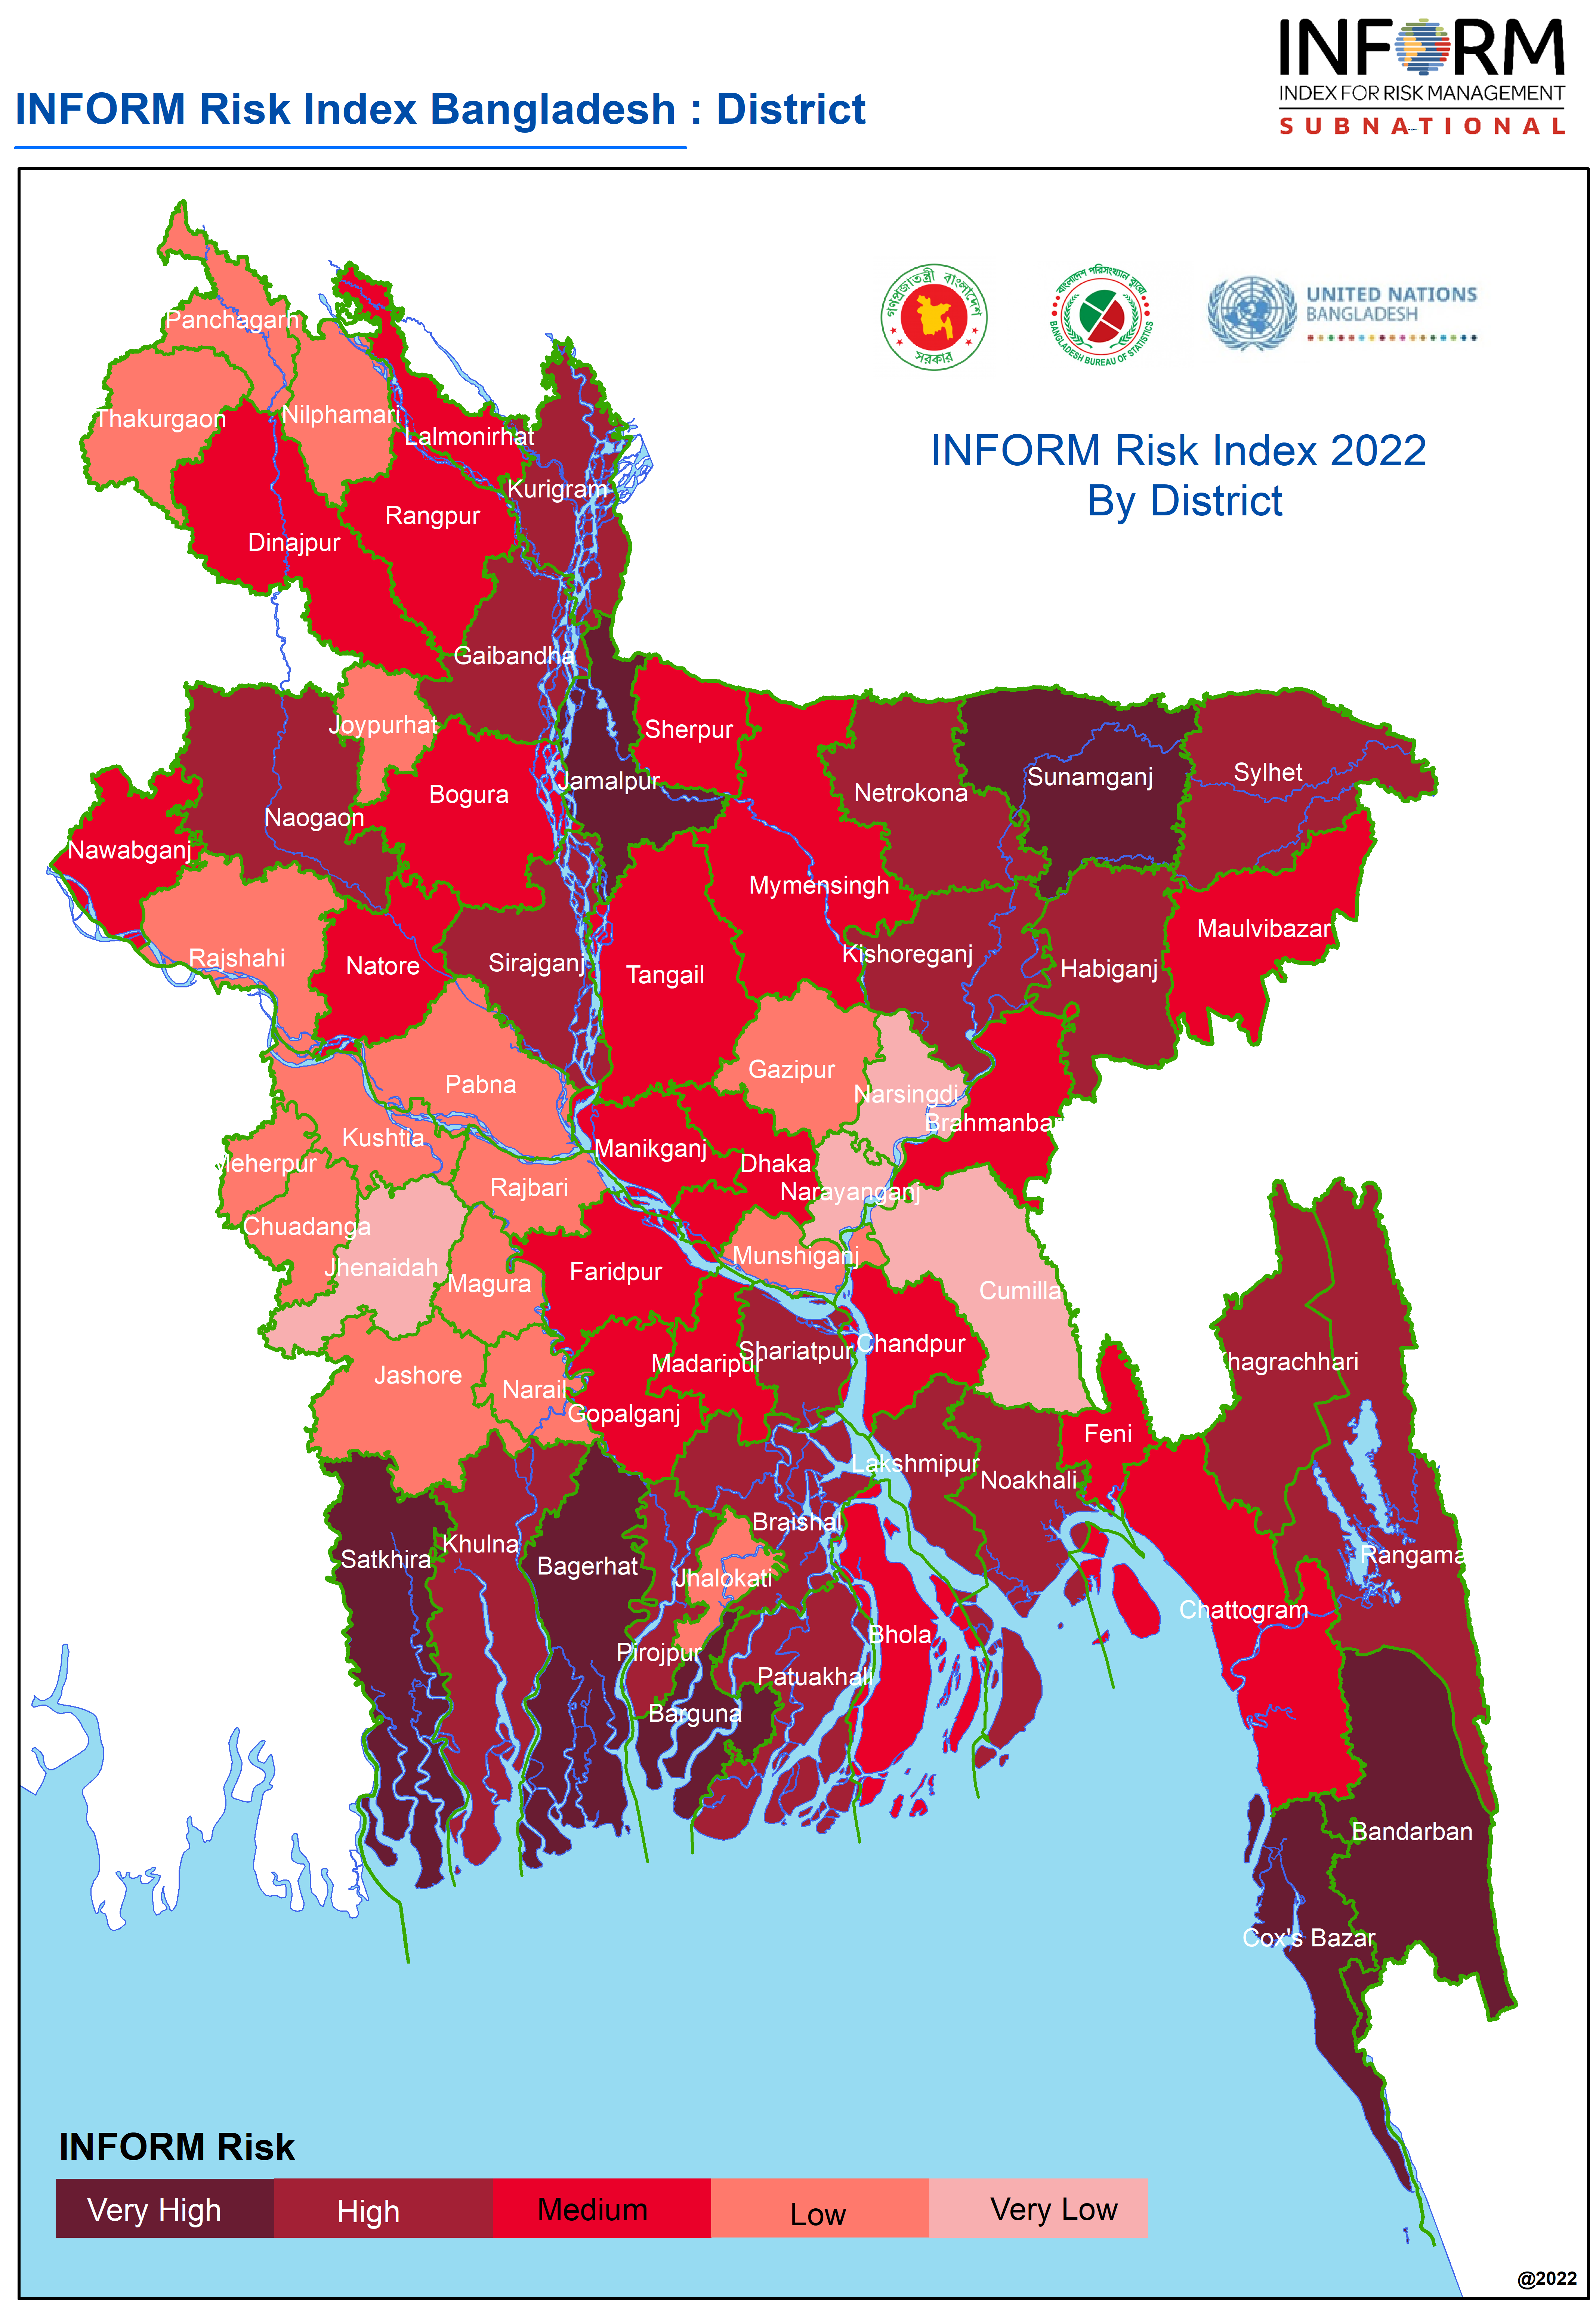 Subnational - Bangladesh